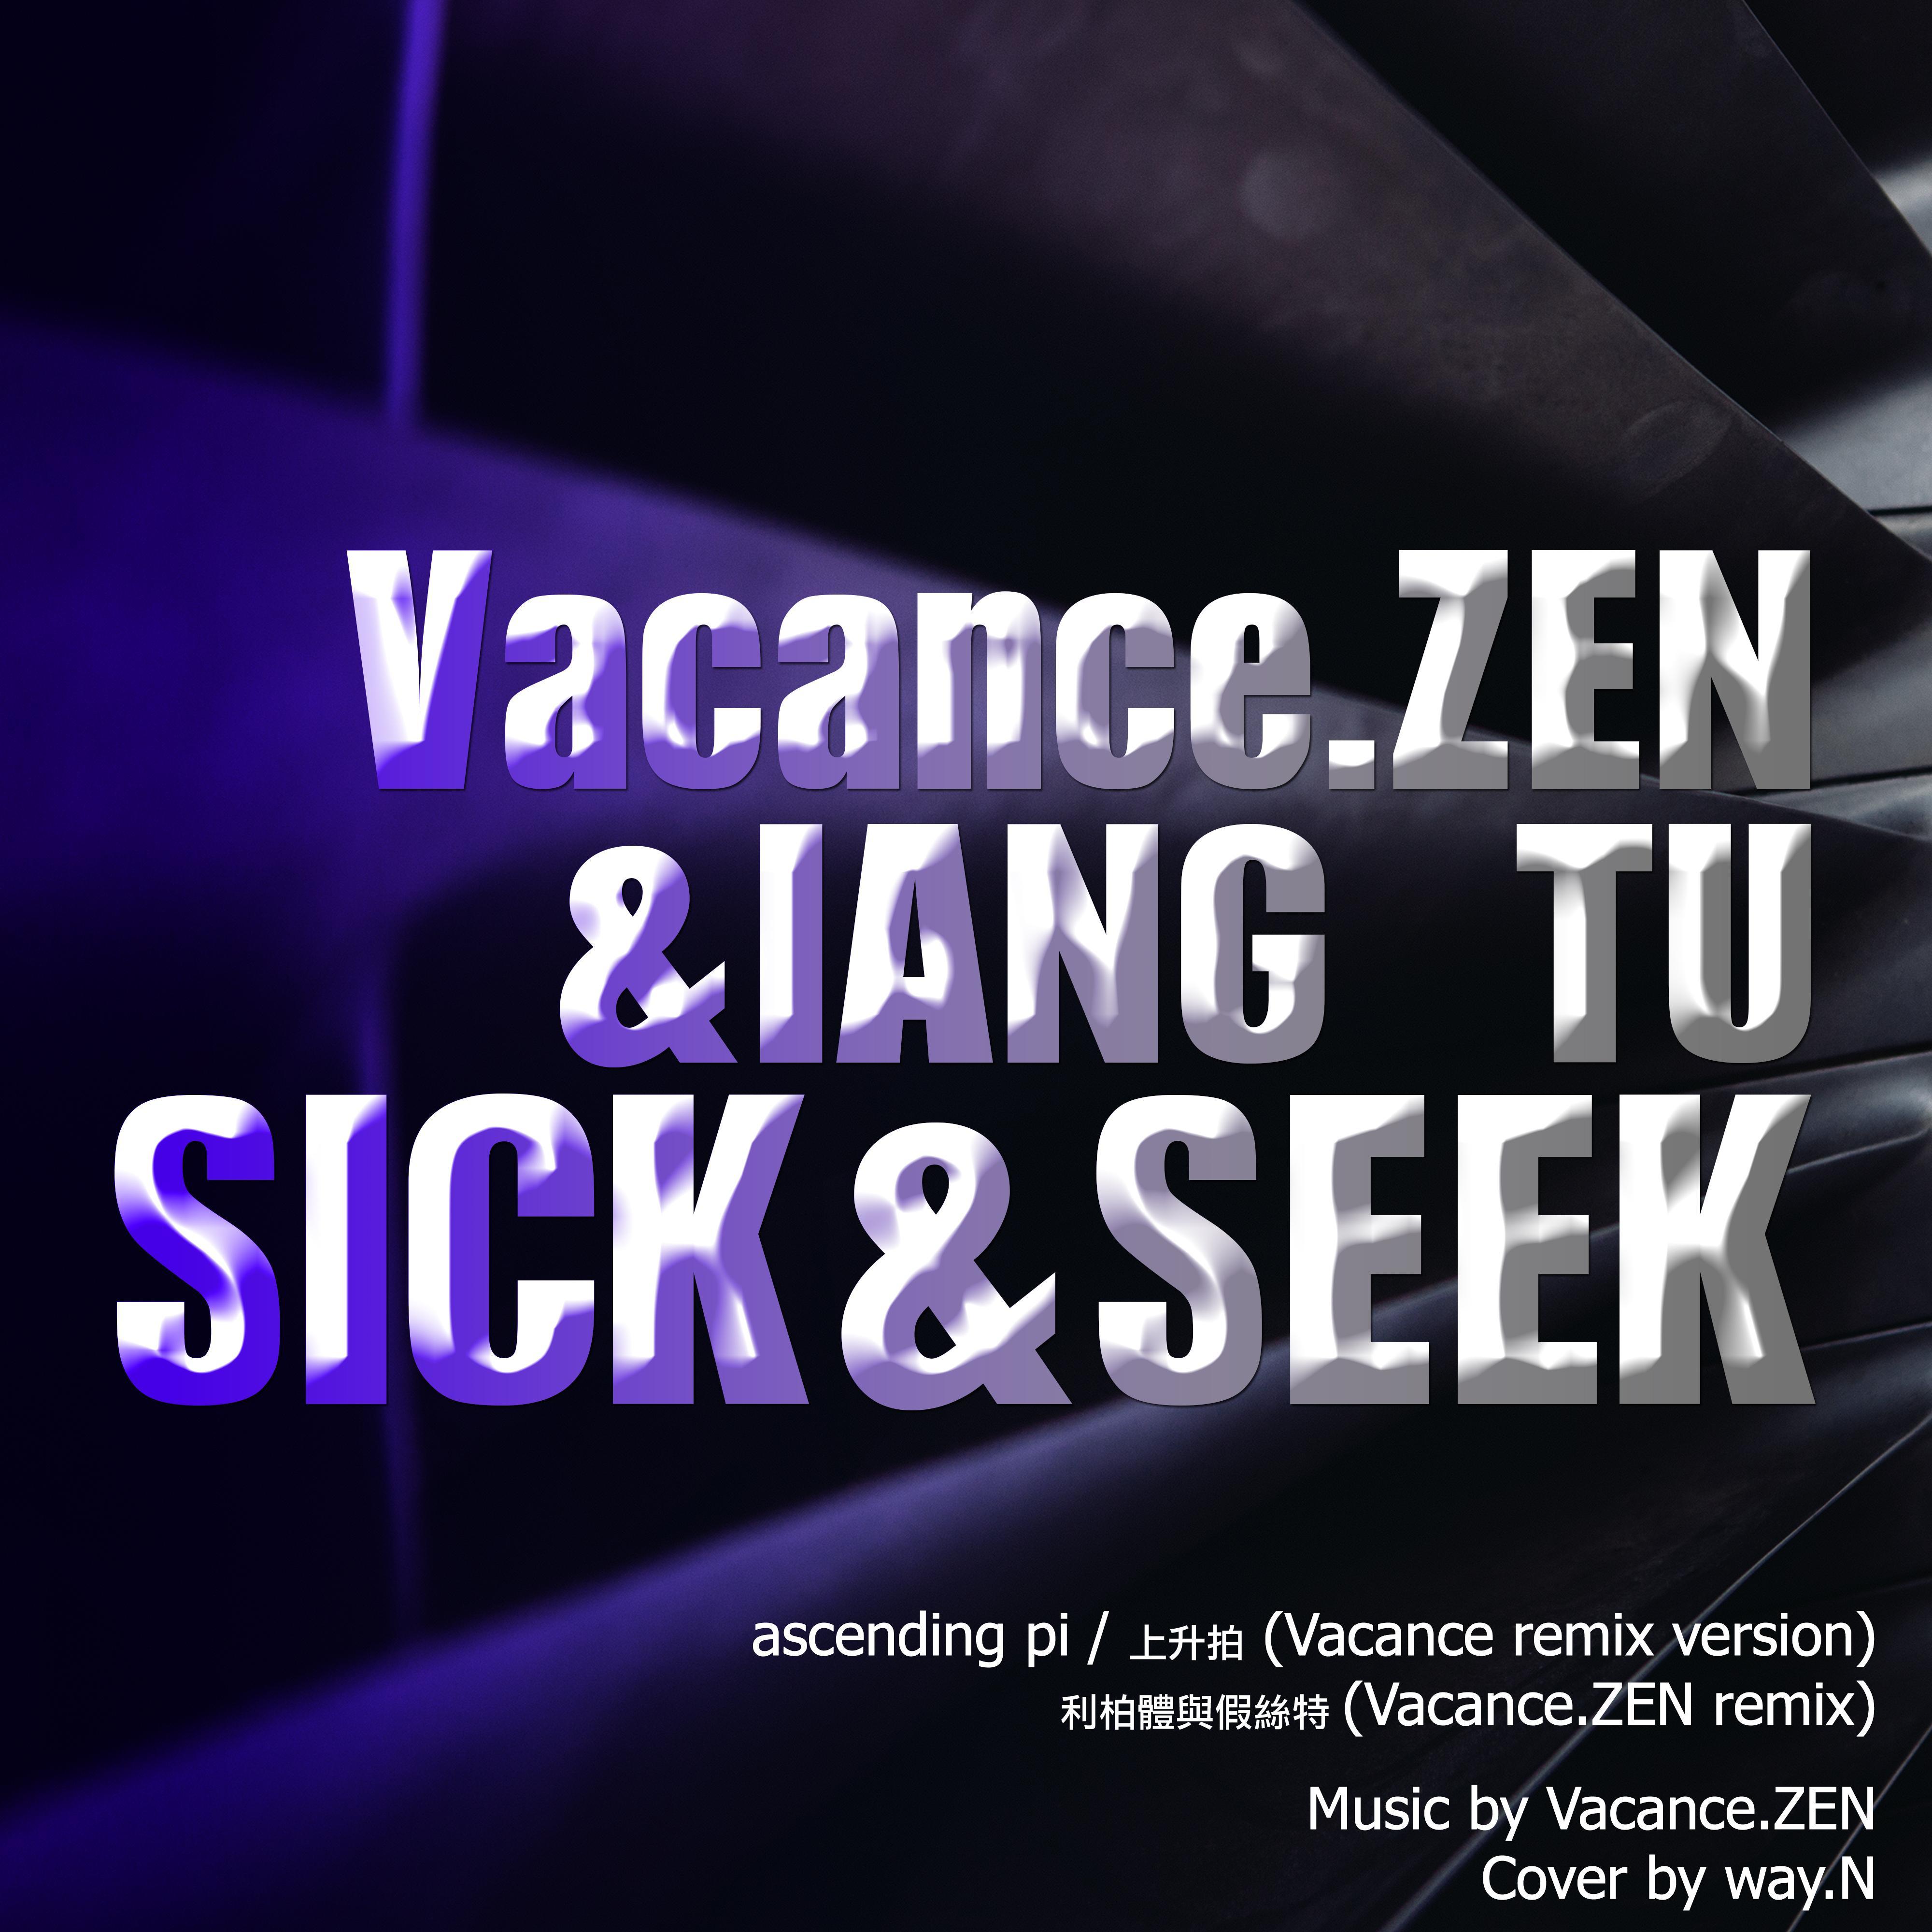 ZEN & TU (sick & seek)专辑